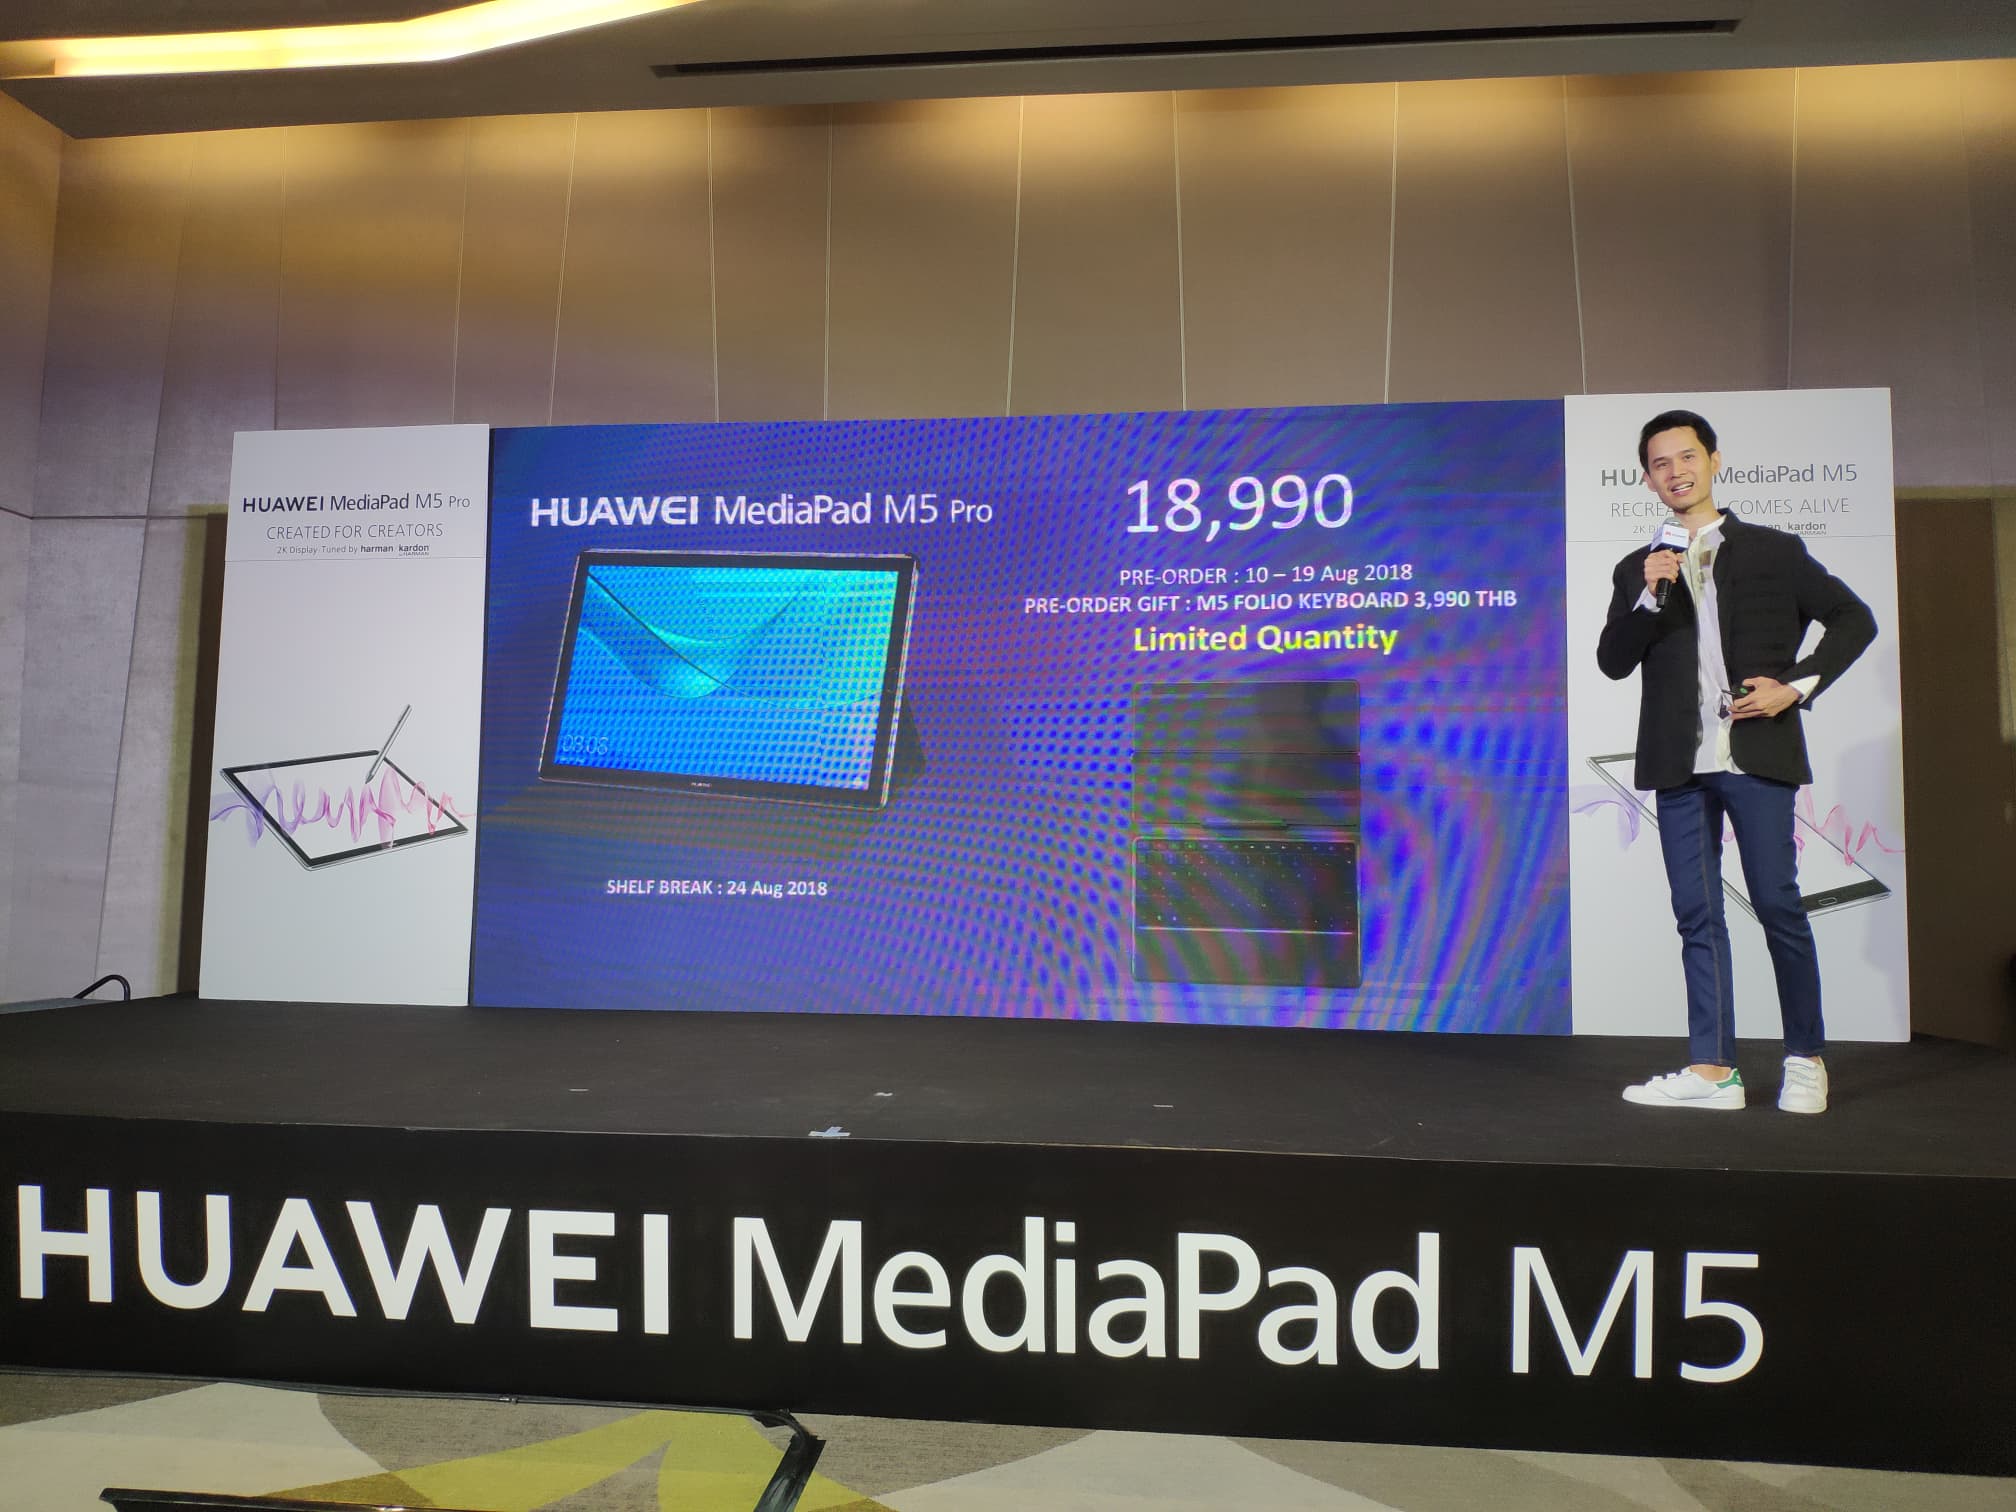 เปิดราคา Huawei MediaPad M5 และ M5 Pro Tablet Android เริ่มต้น 13,990 บาท !!